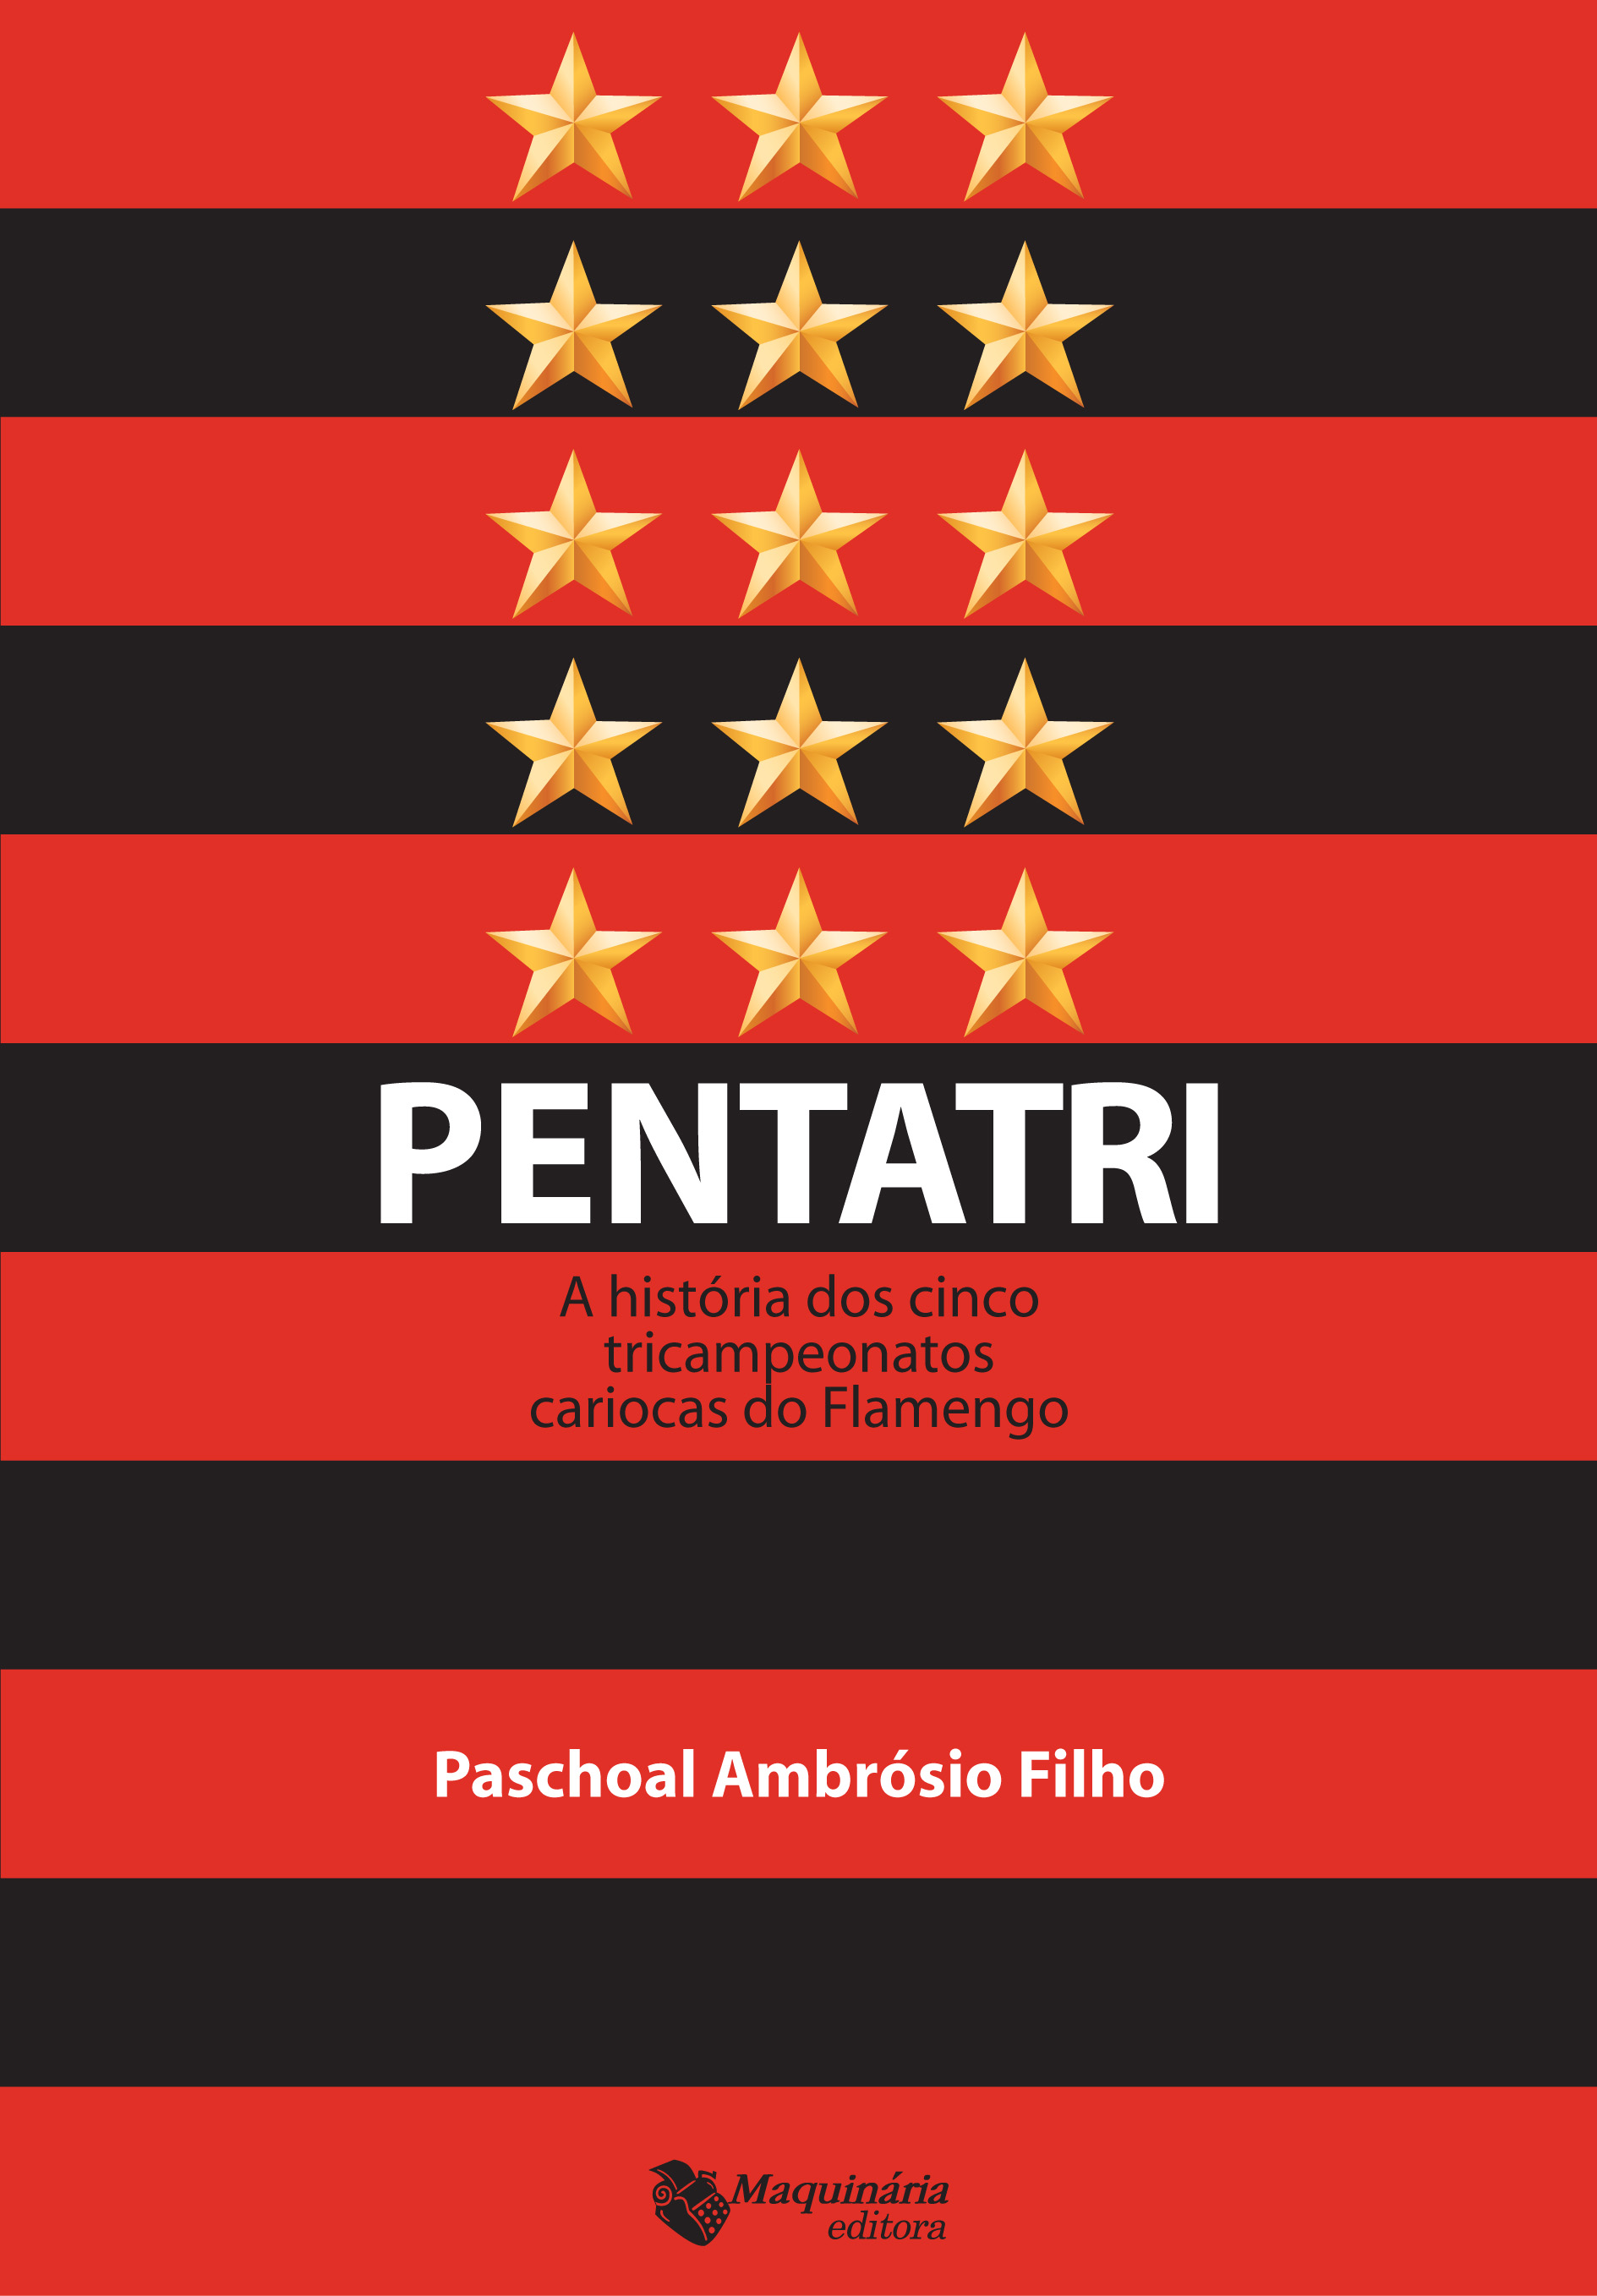 PENTATRI - A historia dos 5 tricampeonatos cariocas do Flamengo